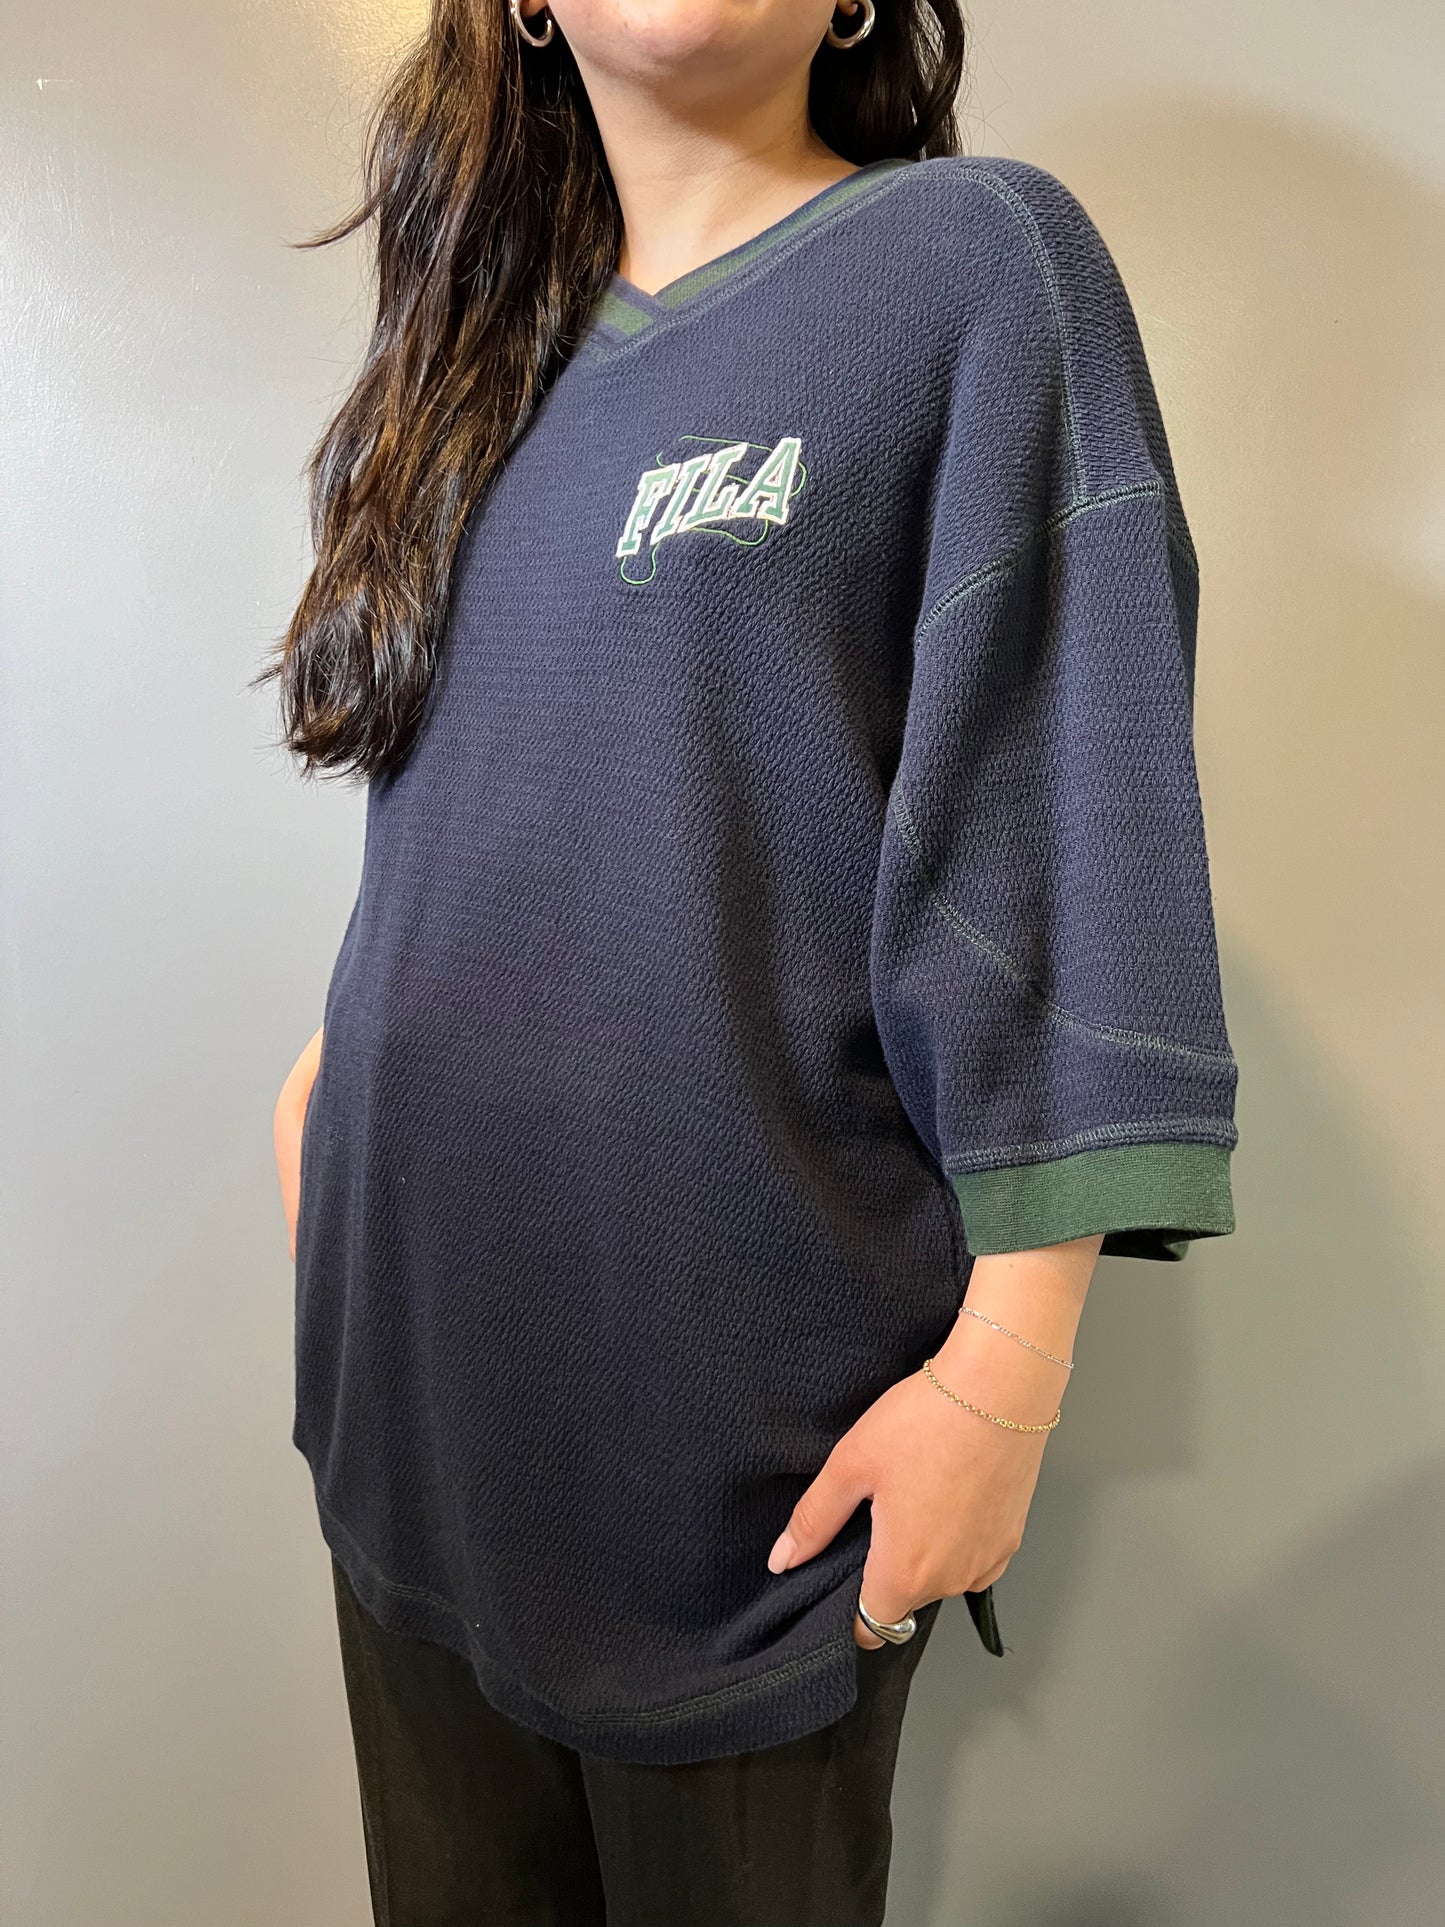 90's FILA Shirt - L/XL